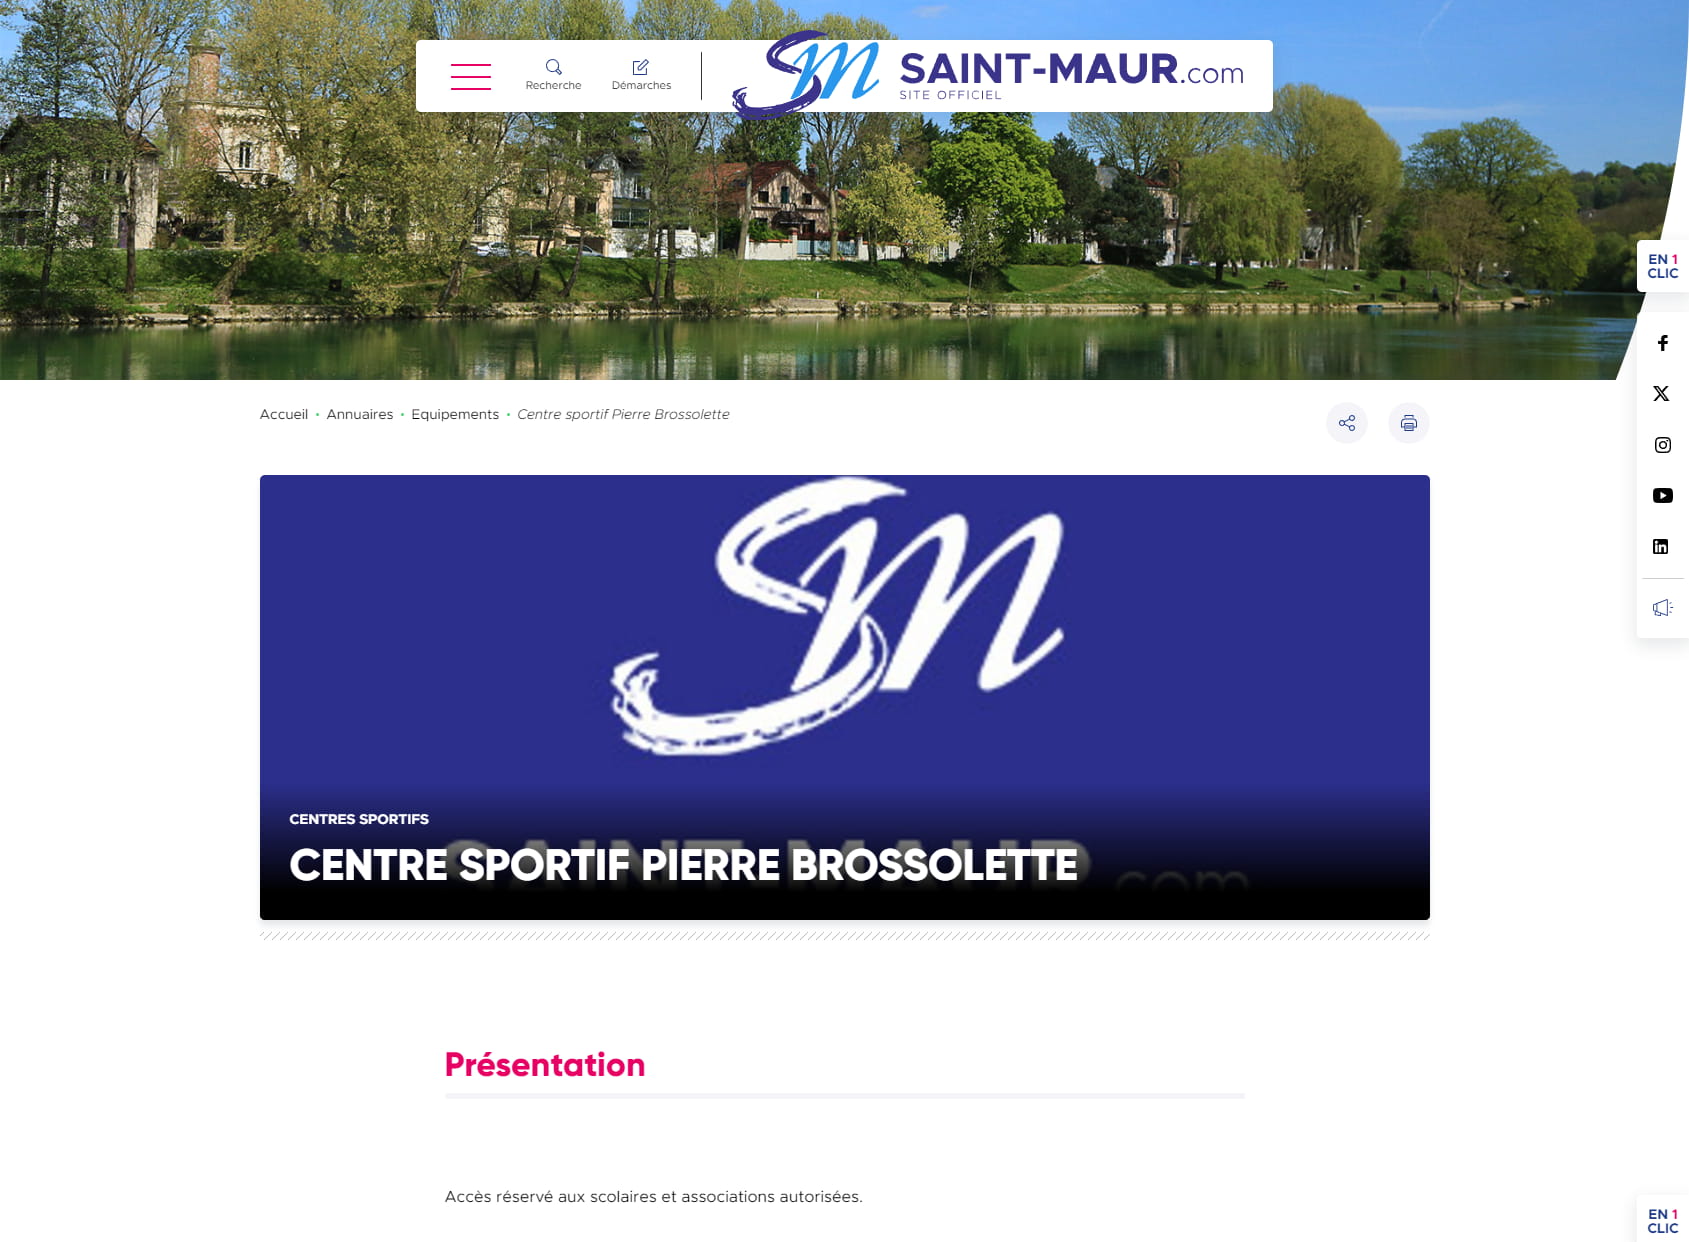 Center Sportif Pierre Brossolette